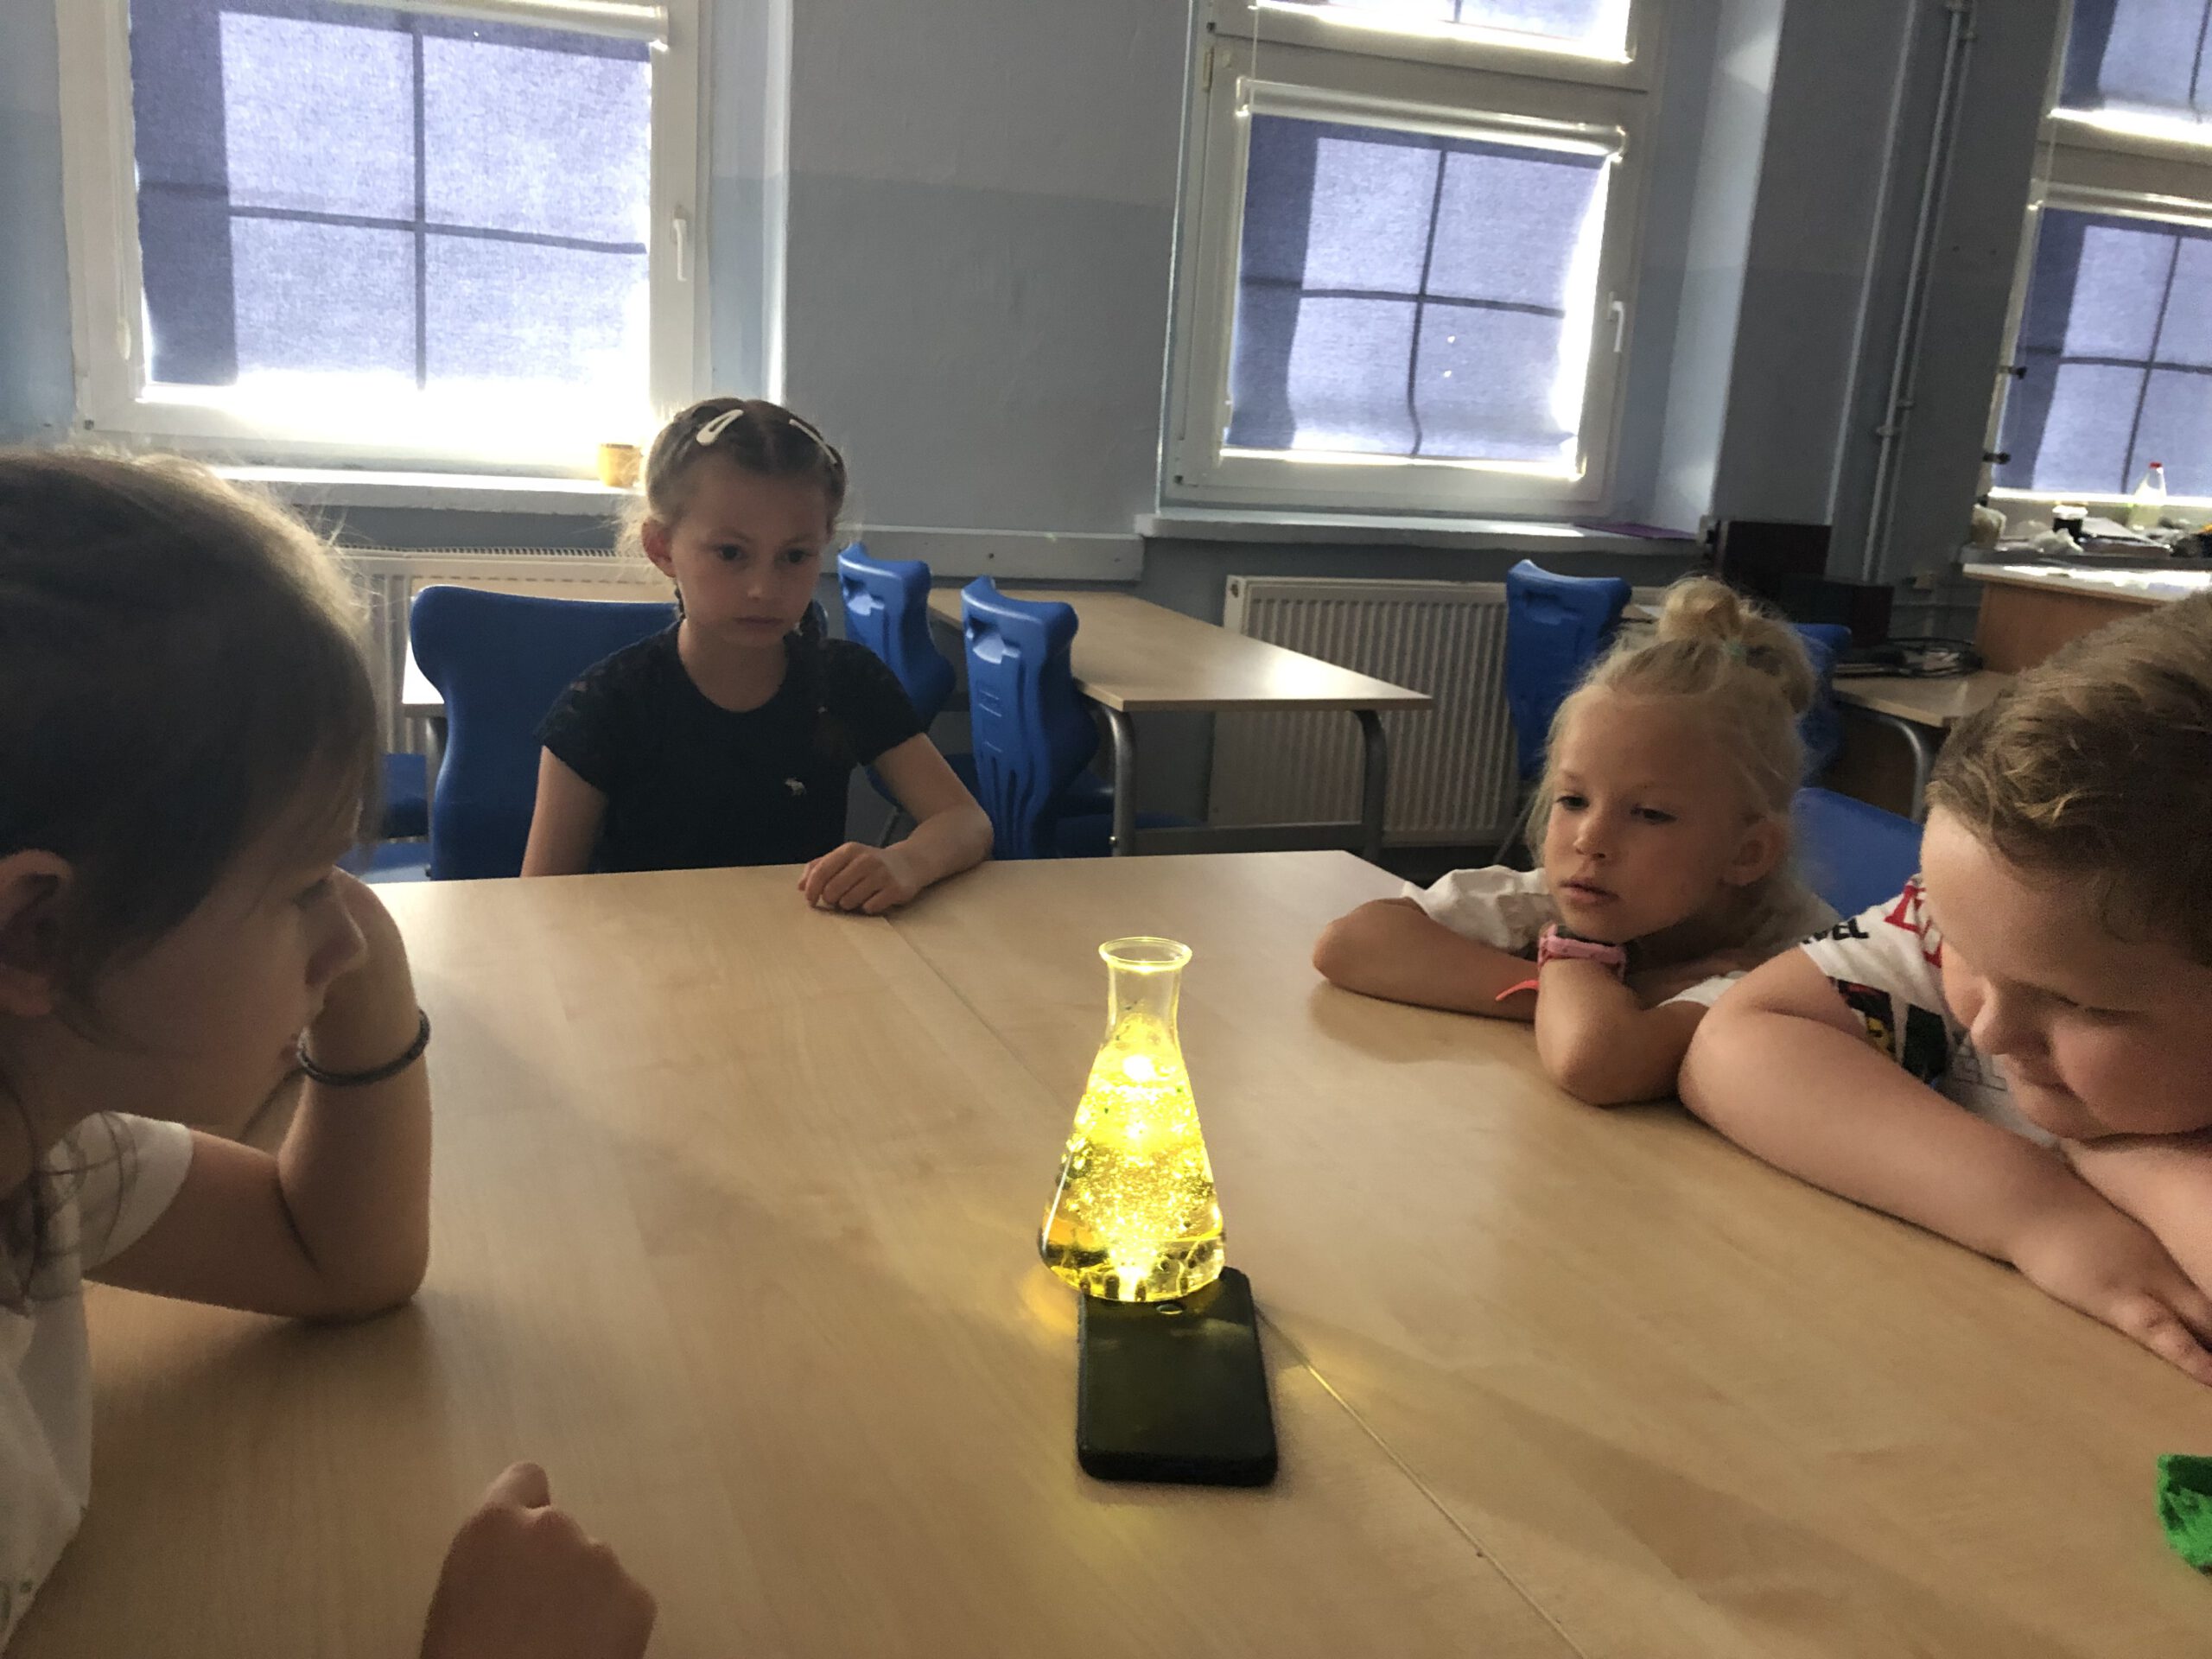 Czwórka dzieci przygląda się kolbie z żółtym płynem